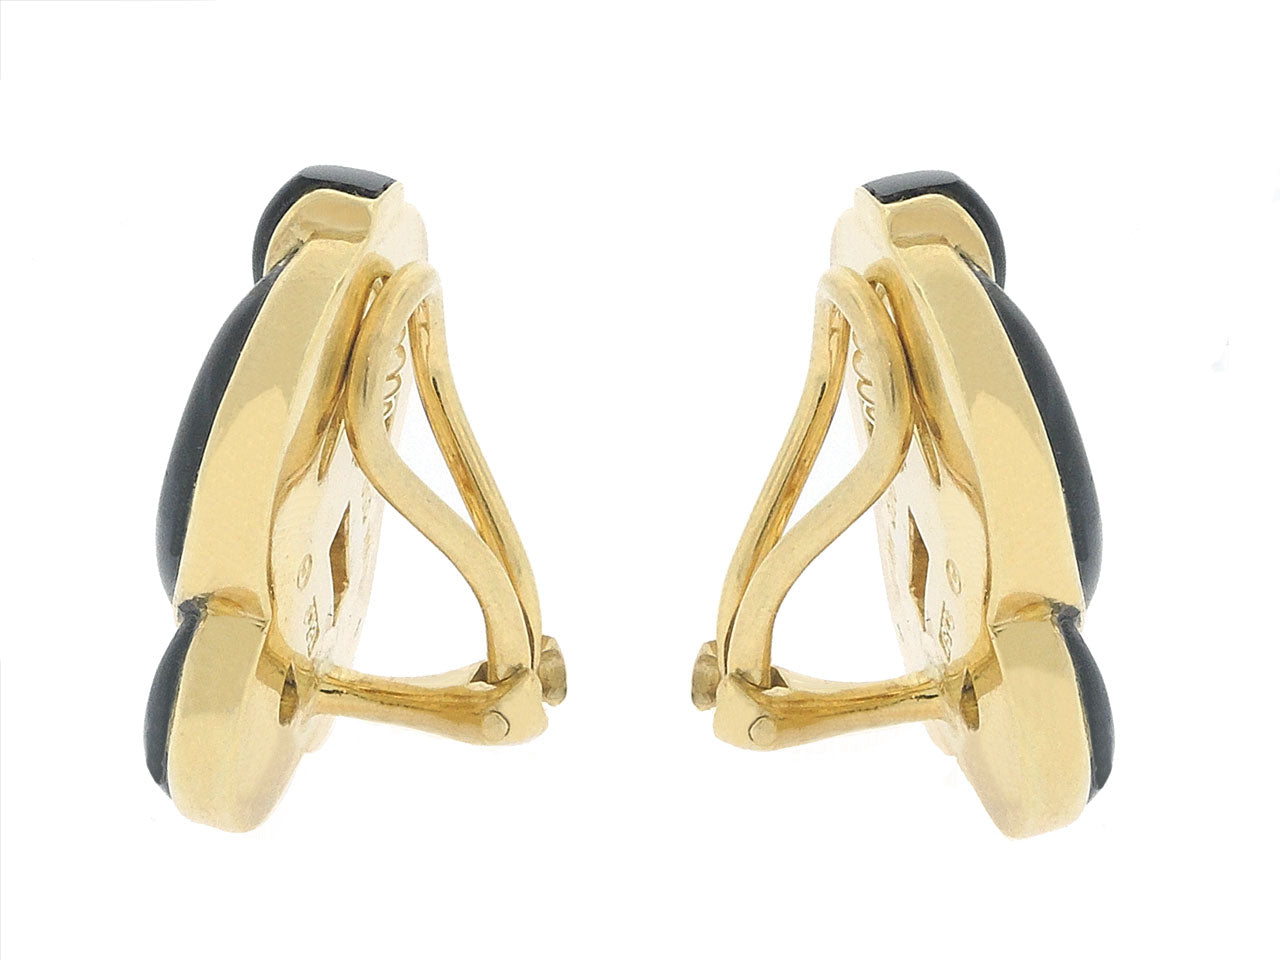 Tiffany & Co. Onyx Earrings in 18K